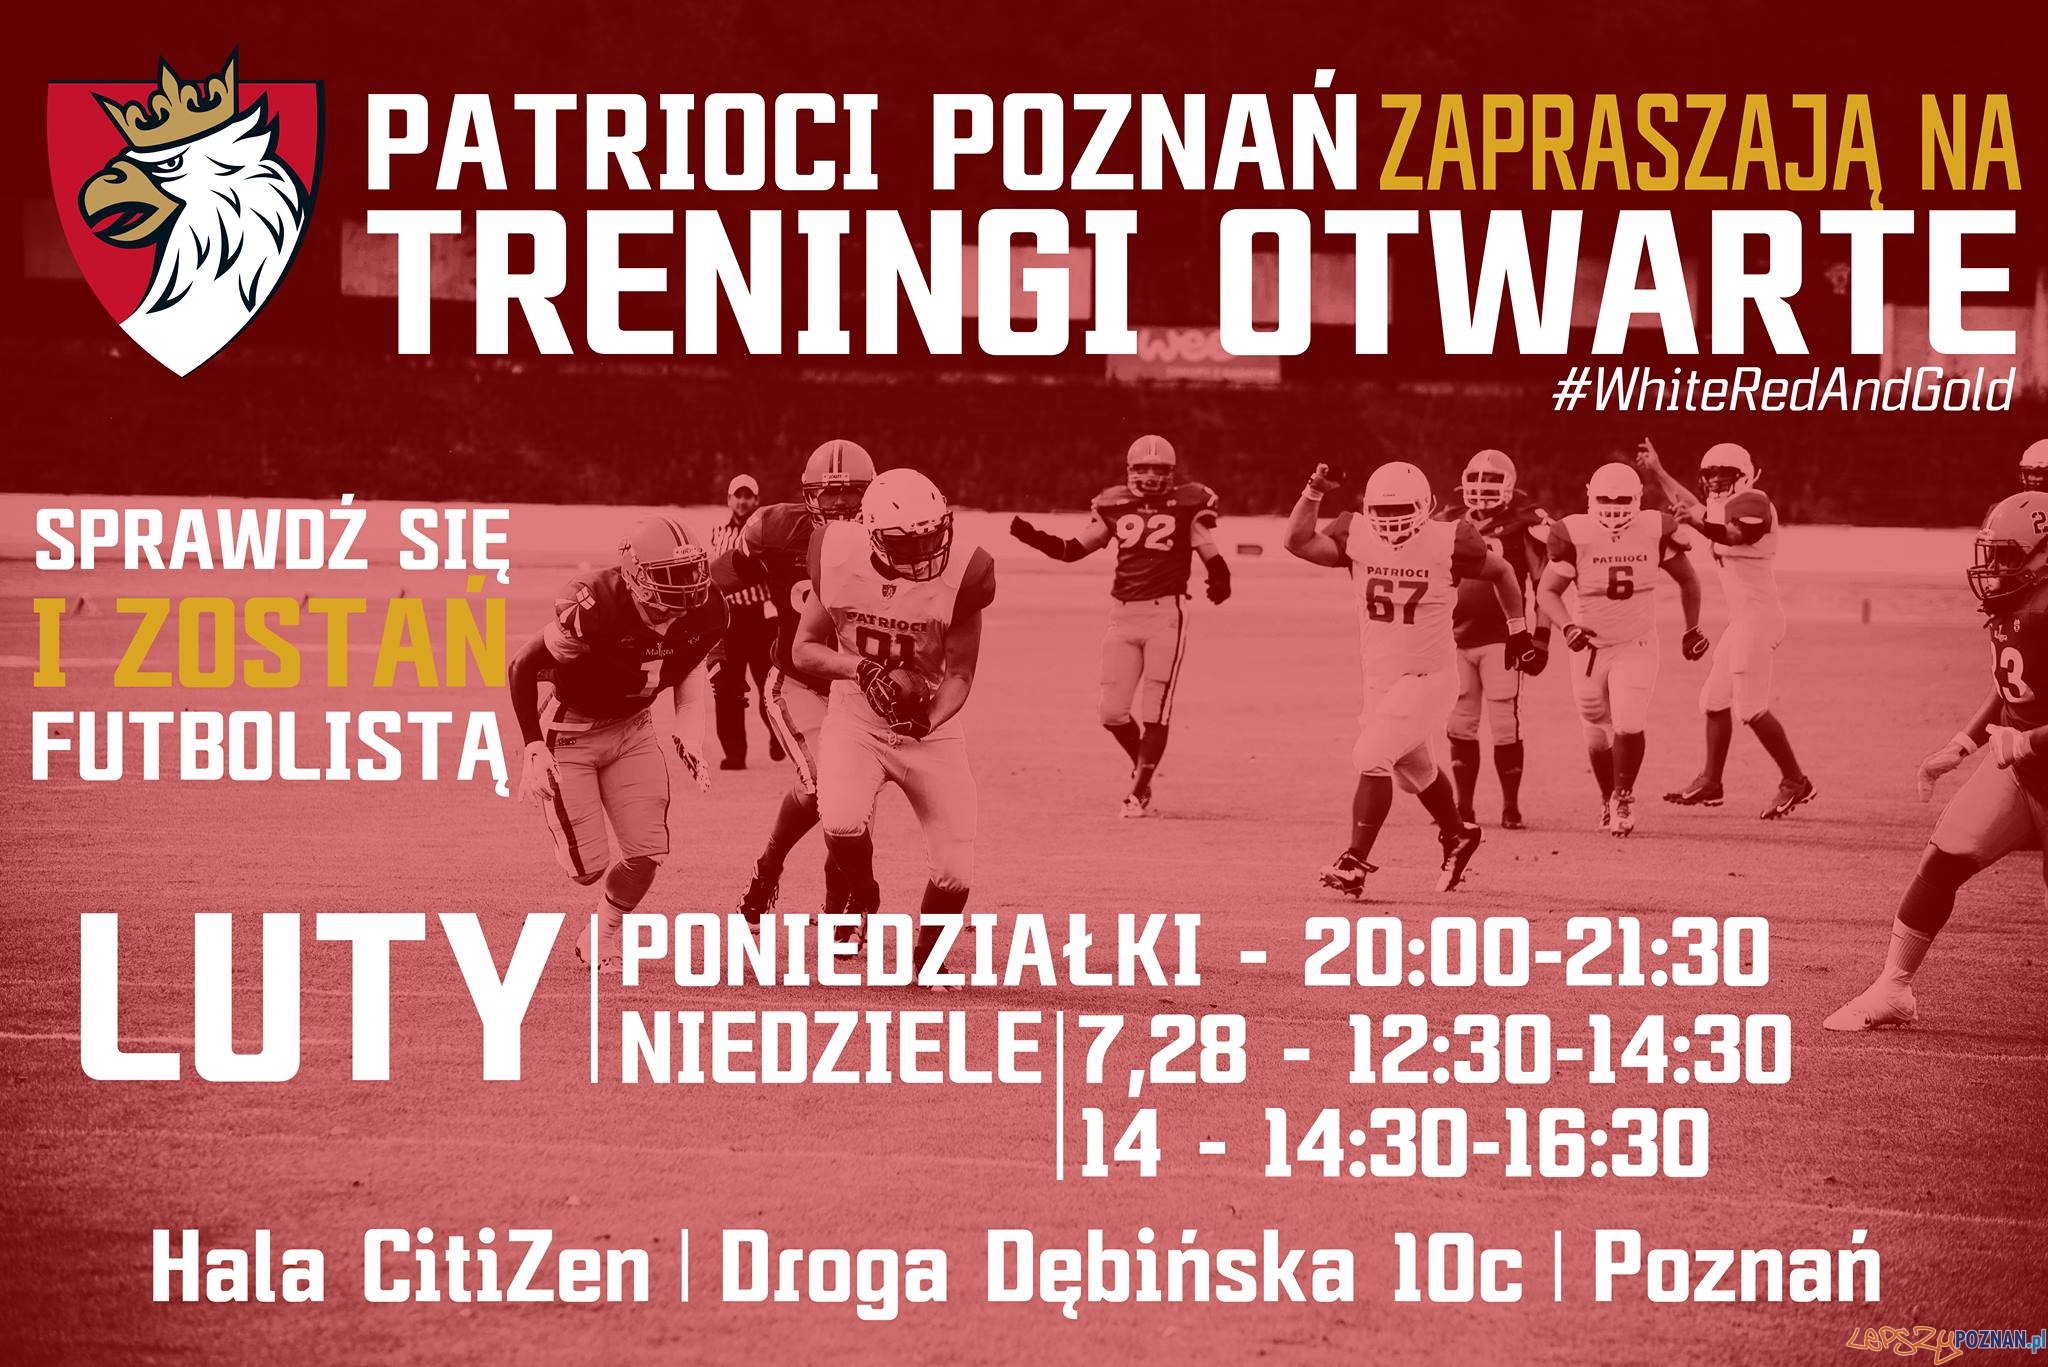 Patrioci Poznań - treningi otwarte luty 2016